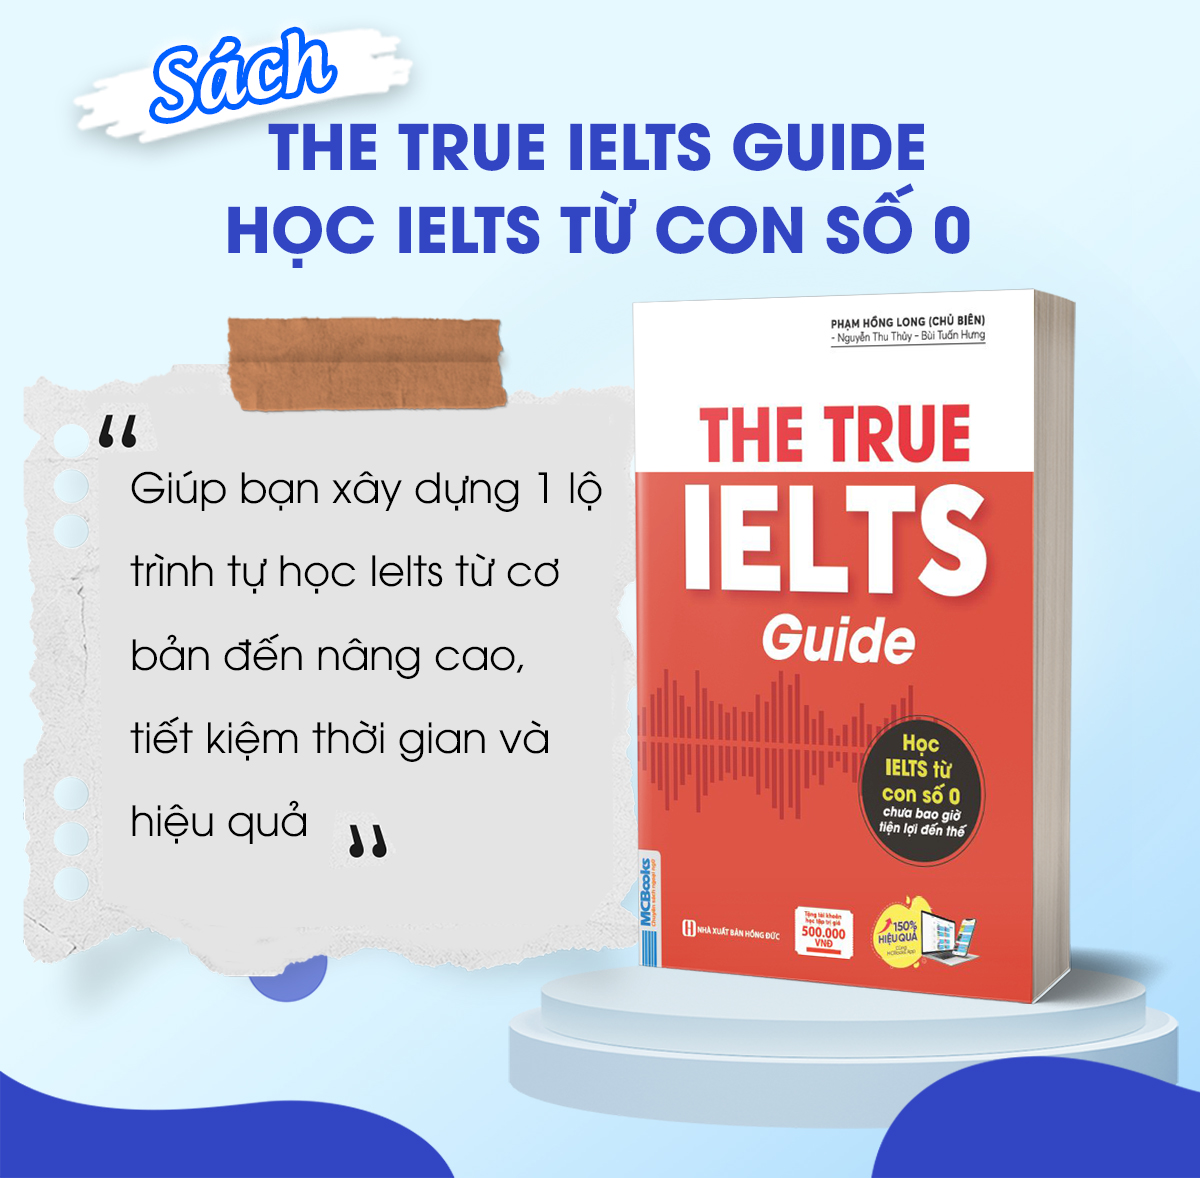 Sách - The True Ielts Guide - Cẩm nang hướng dẫn tự học IELTS chuẩn cho người mới bắt đầu